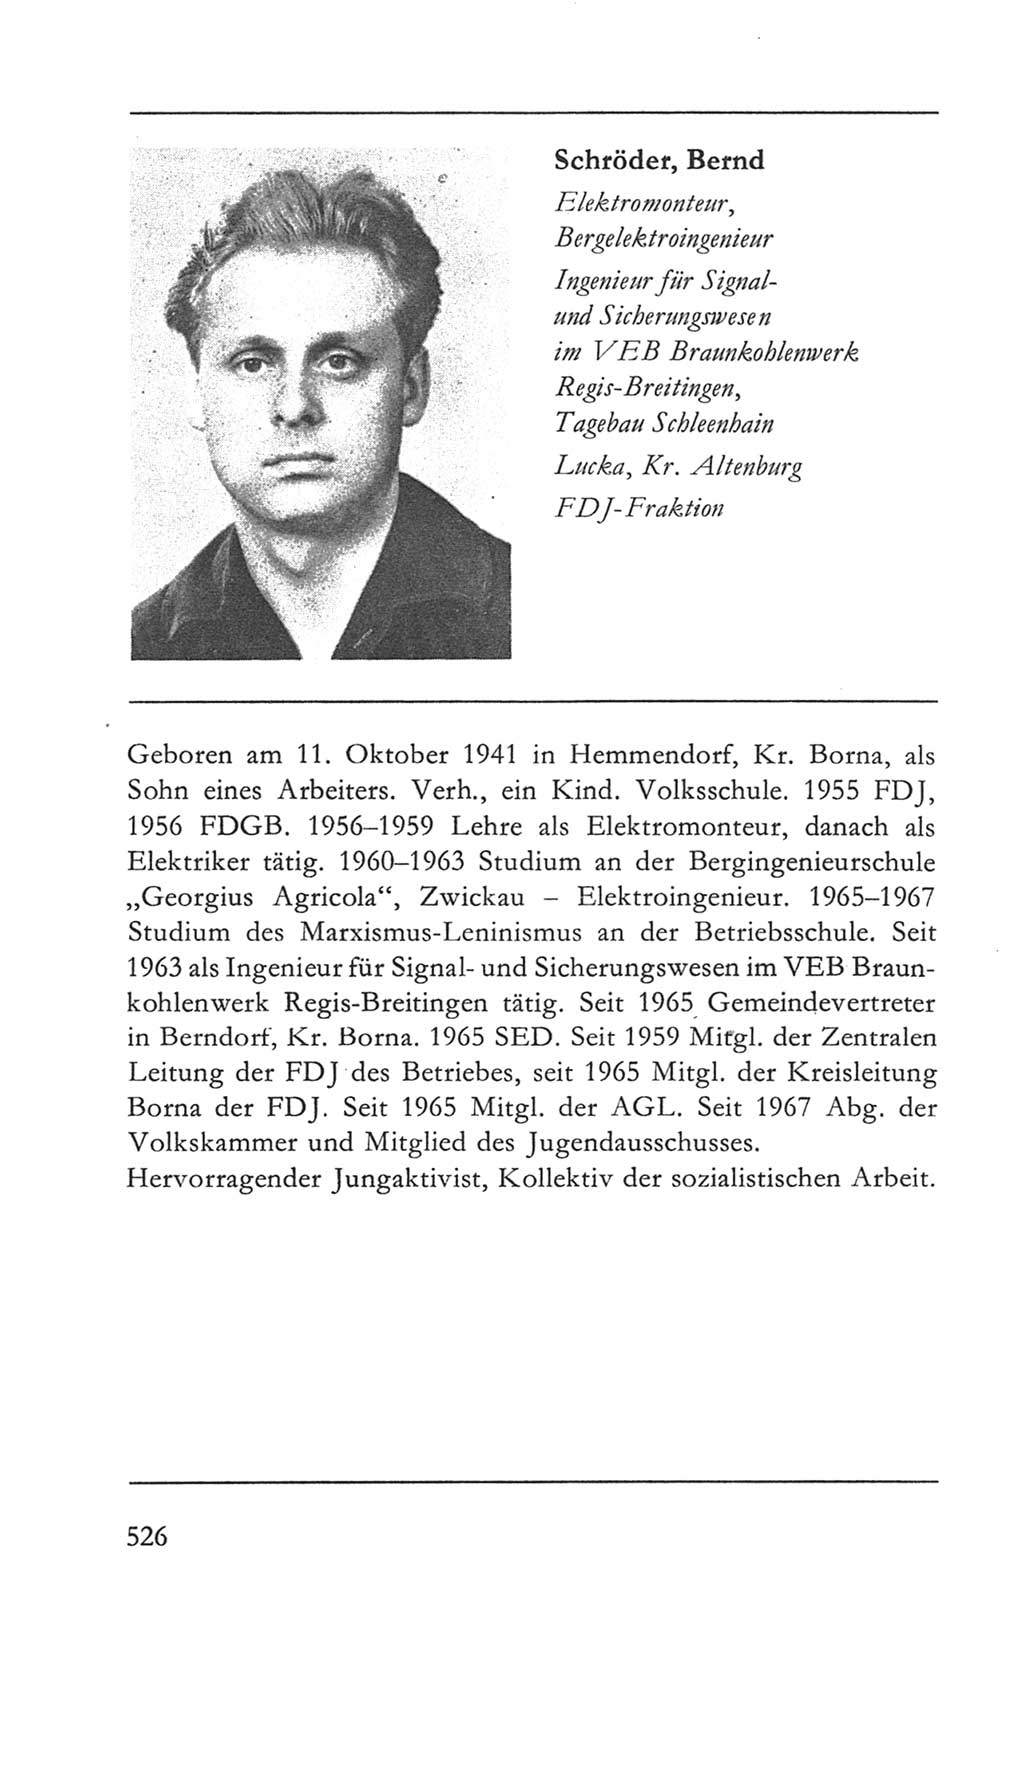 Volkskammer (VK) der Deutschen Demokratischen Republik (DDR) 5. Wahlperiode 1967-1971, Seite 526 (VK. DDR 5. WP. 1967-1971, S. 526)